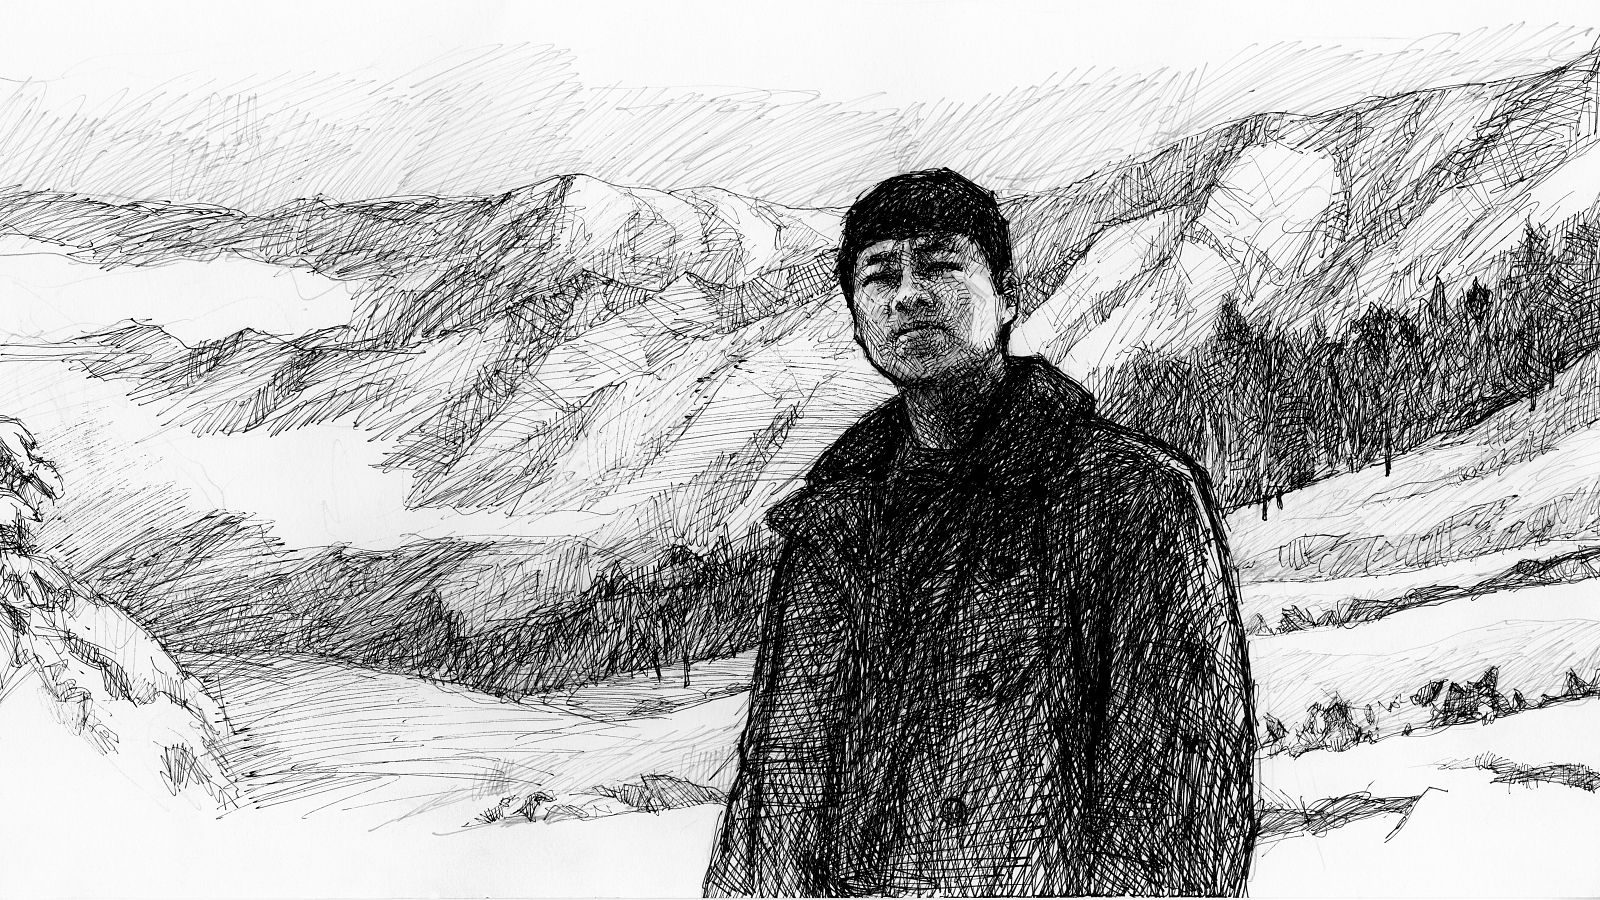 Chongrui Nie: "Nunca podremos capturar la belleza del mundo con nuestro arte, as que pinto con el corazn"